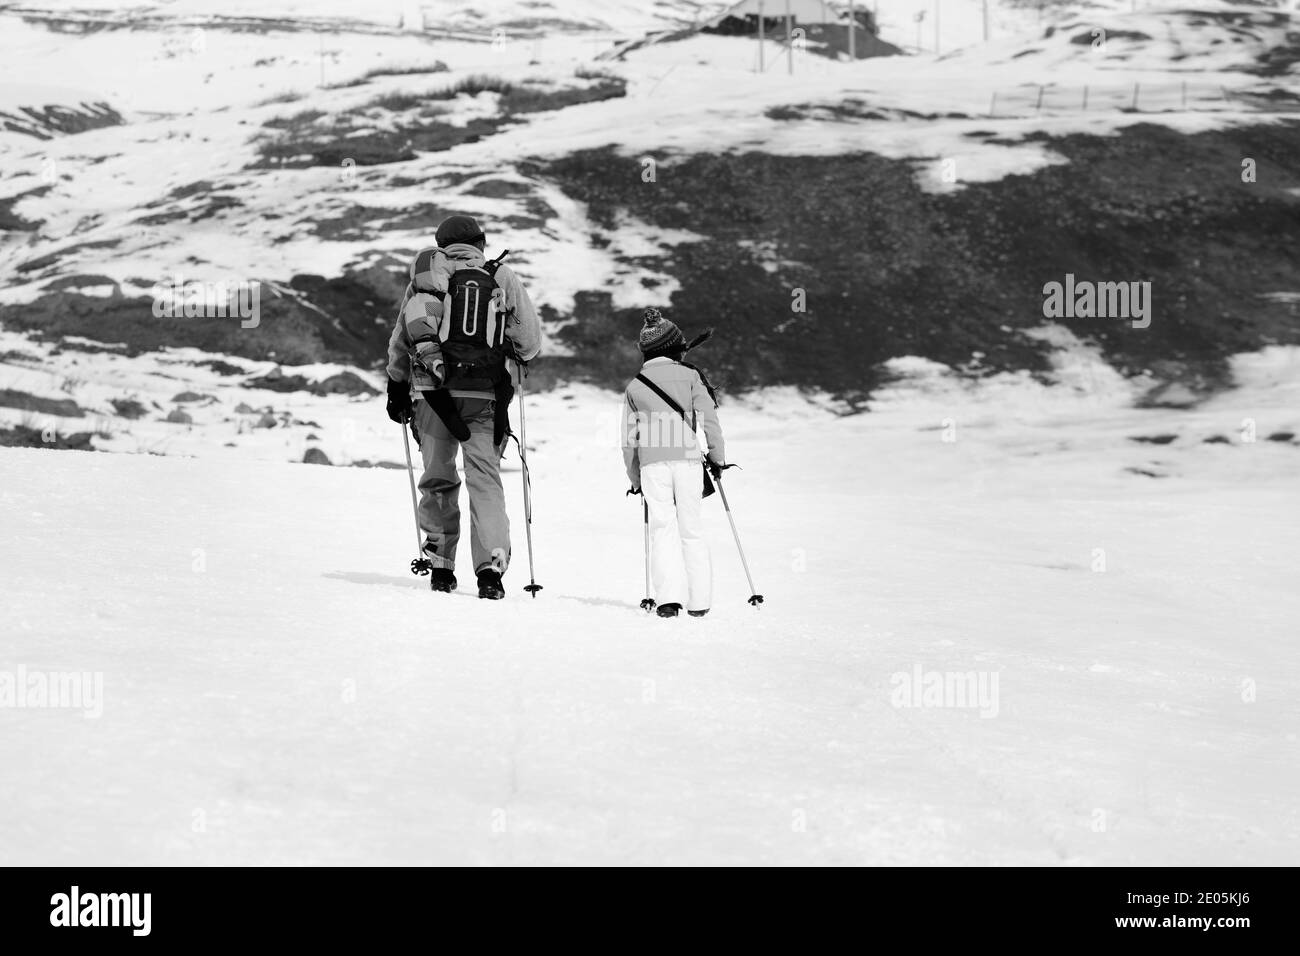 Padre e figlia con le racchette da sci sulle piste innevate in inverno poco innevato. Montagne del Caucaso, Georgia, regione Gudauri. Immagine in bianco e nero. Foto Stock